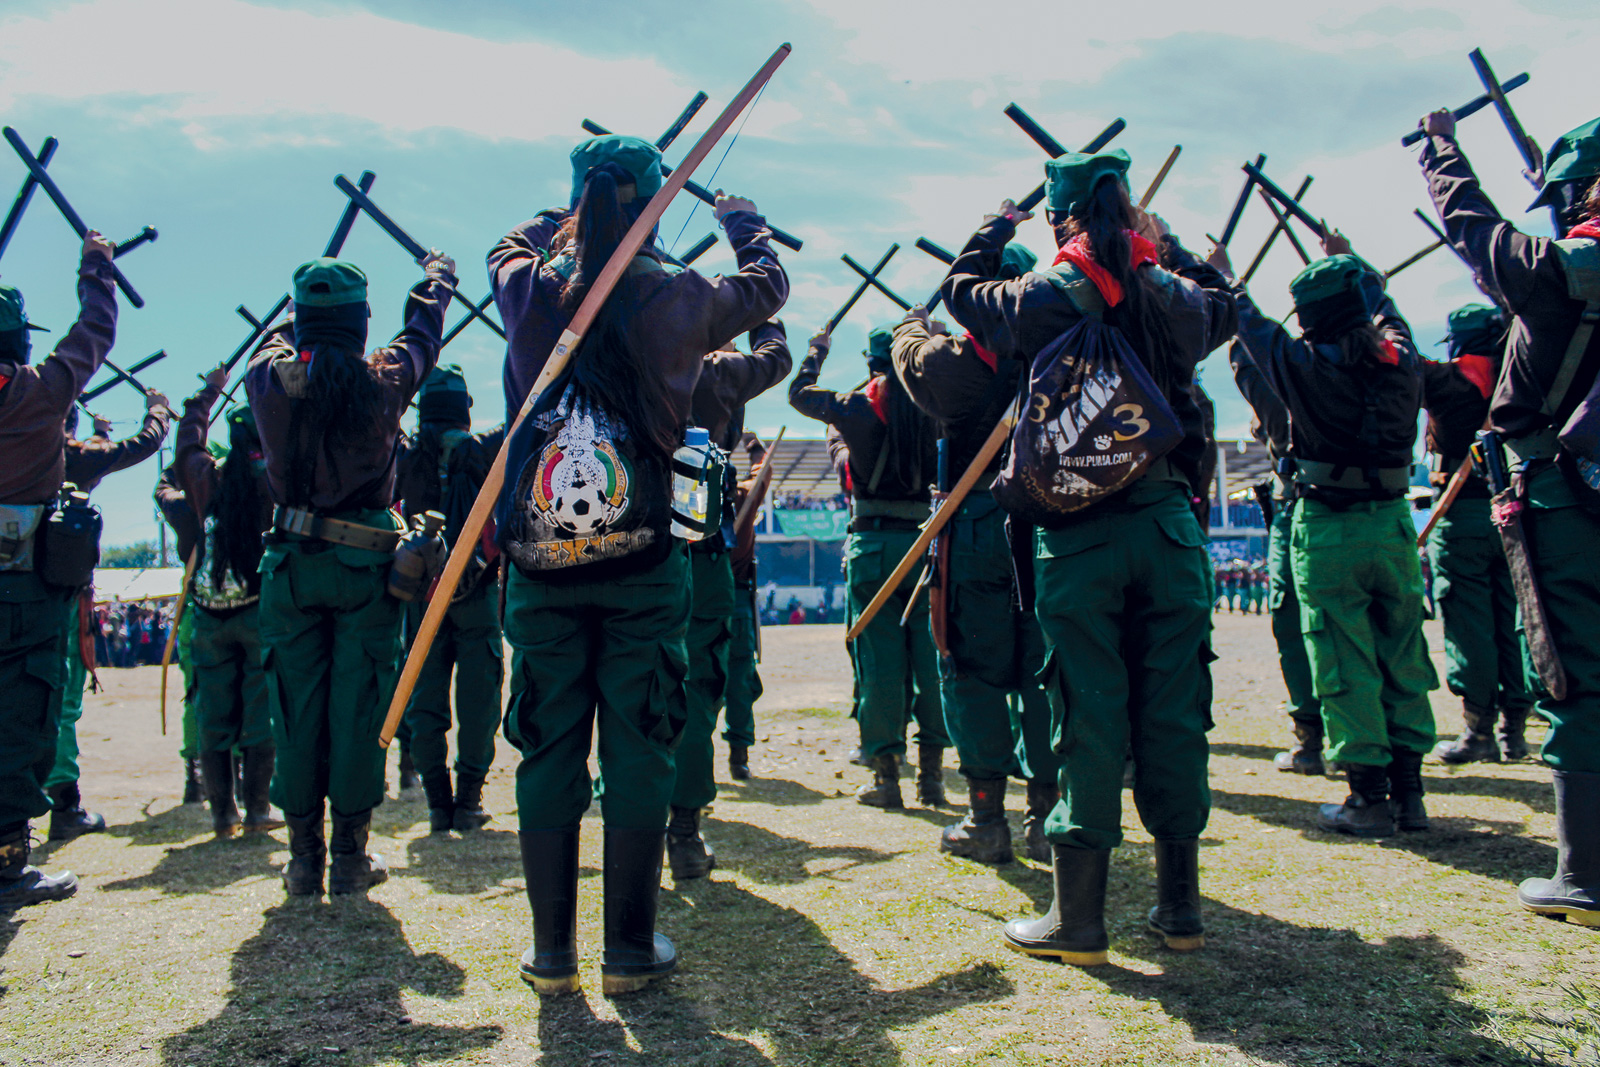 Segundo Encuentro Internacional de Mujeres que Luchan. Caracol Morelia, Chiapas, diciembre de 2019. Fotografía de © Carolina E. Díaz Íñigo